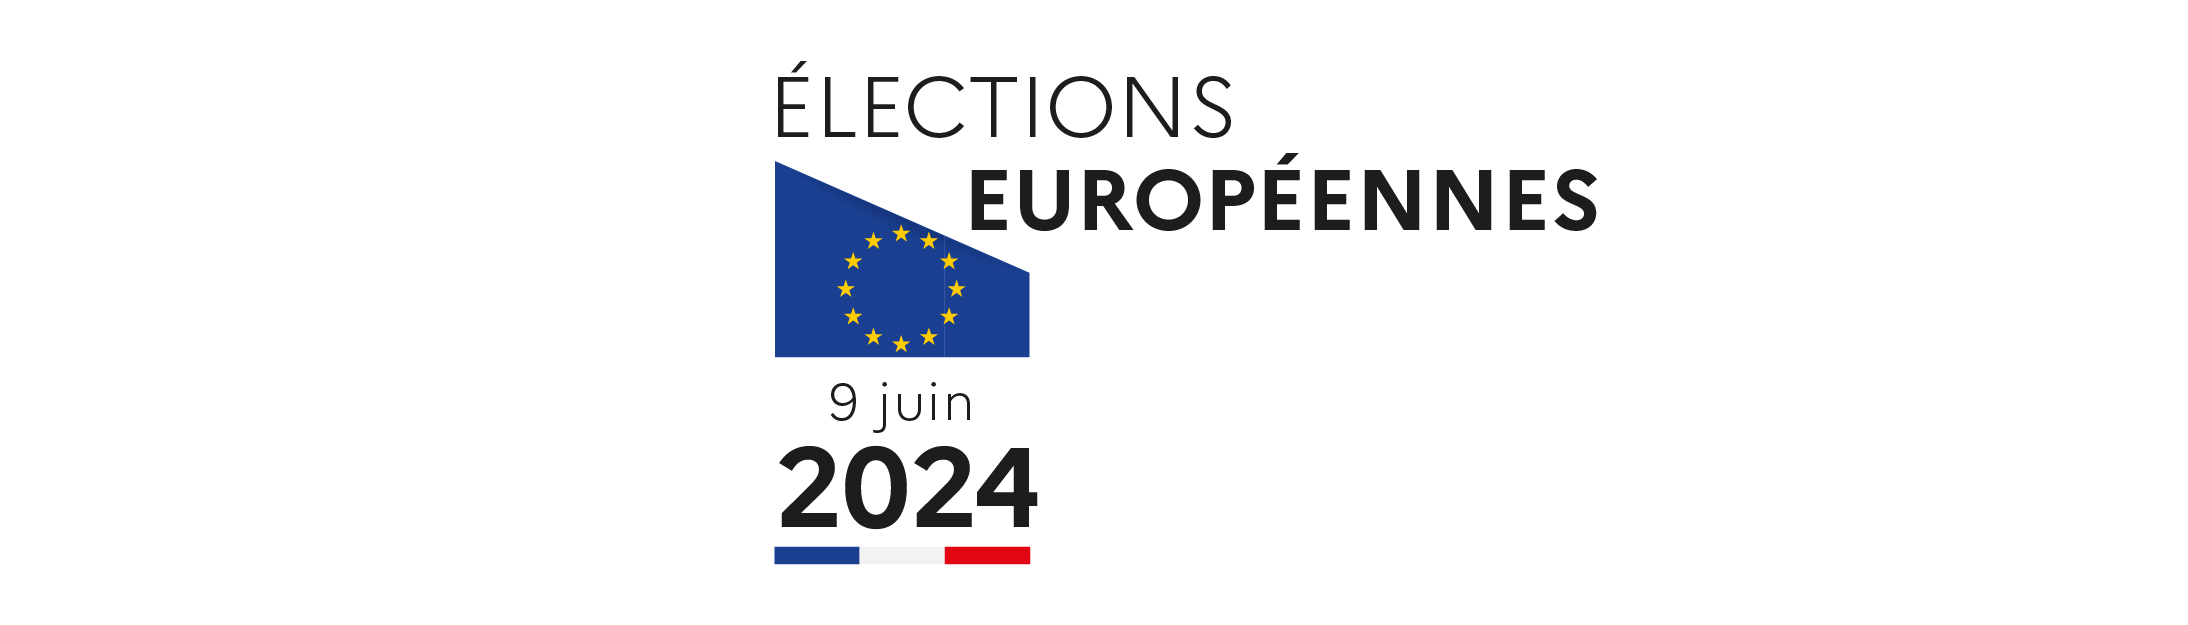 Tout savoir sur les élections européennes de juin 2024